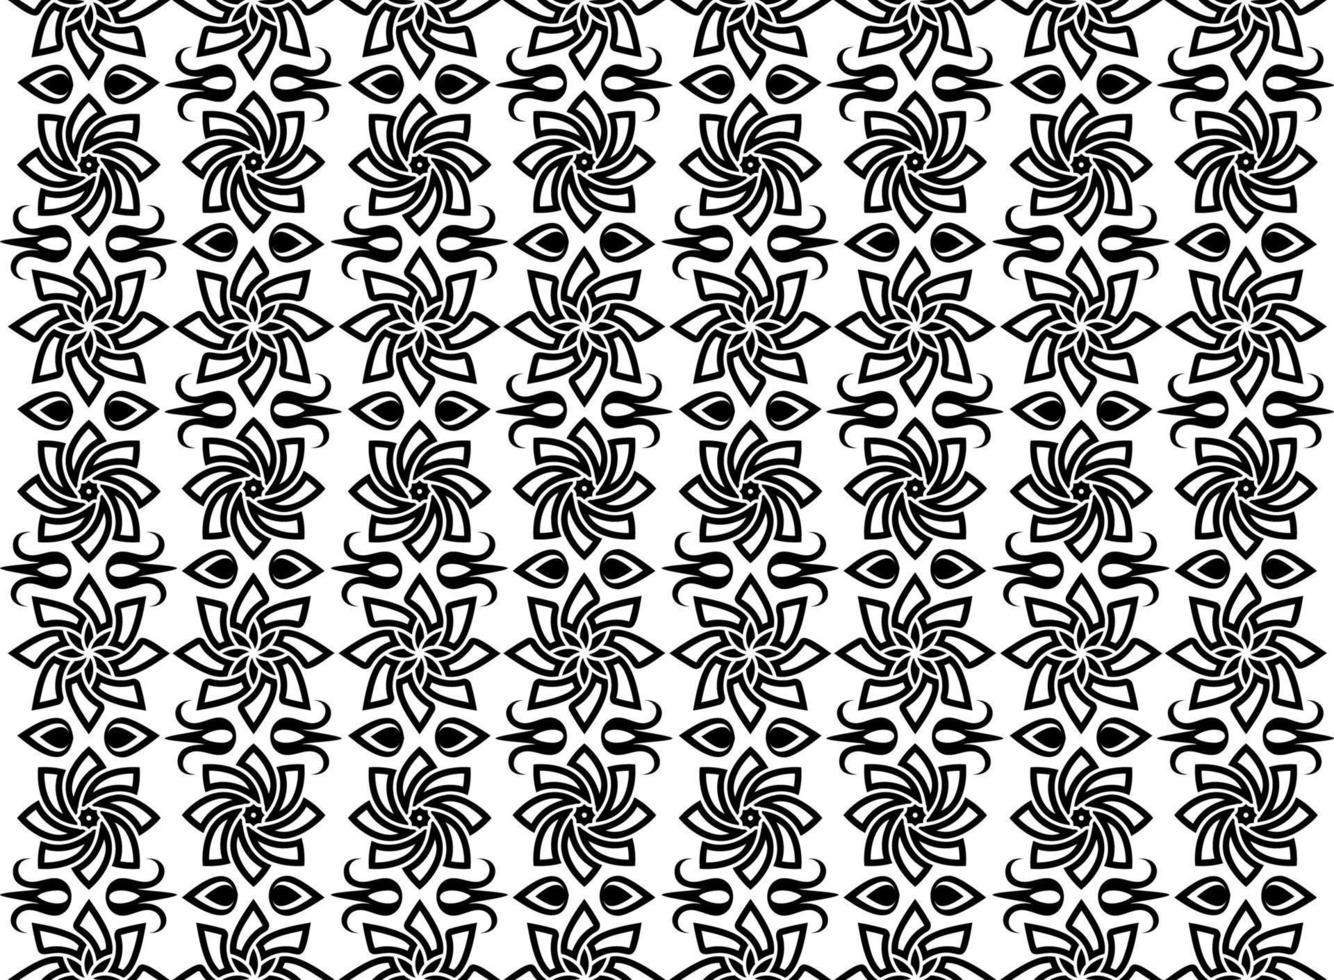 padrão oriental preto e branco. elementos florais de repetição sem costura, fundo com ornamento árabe. vetor